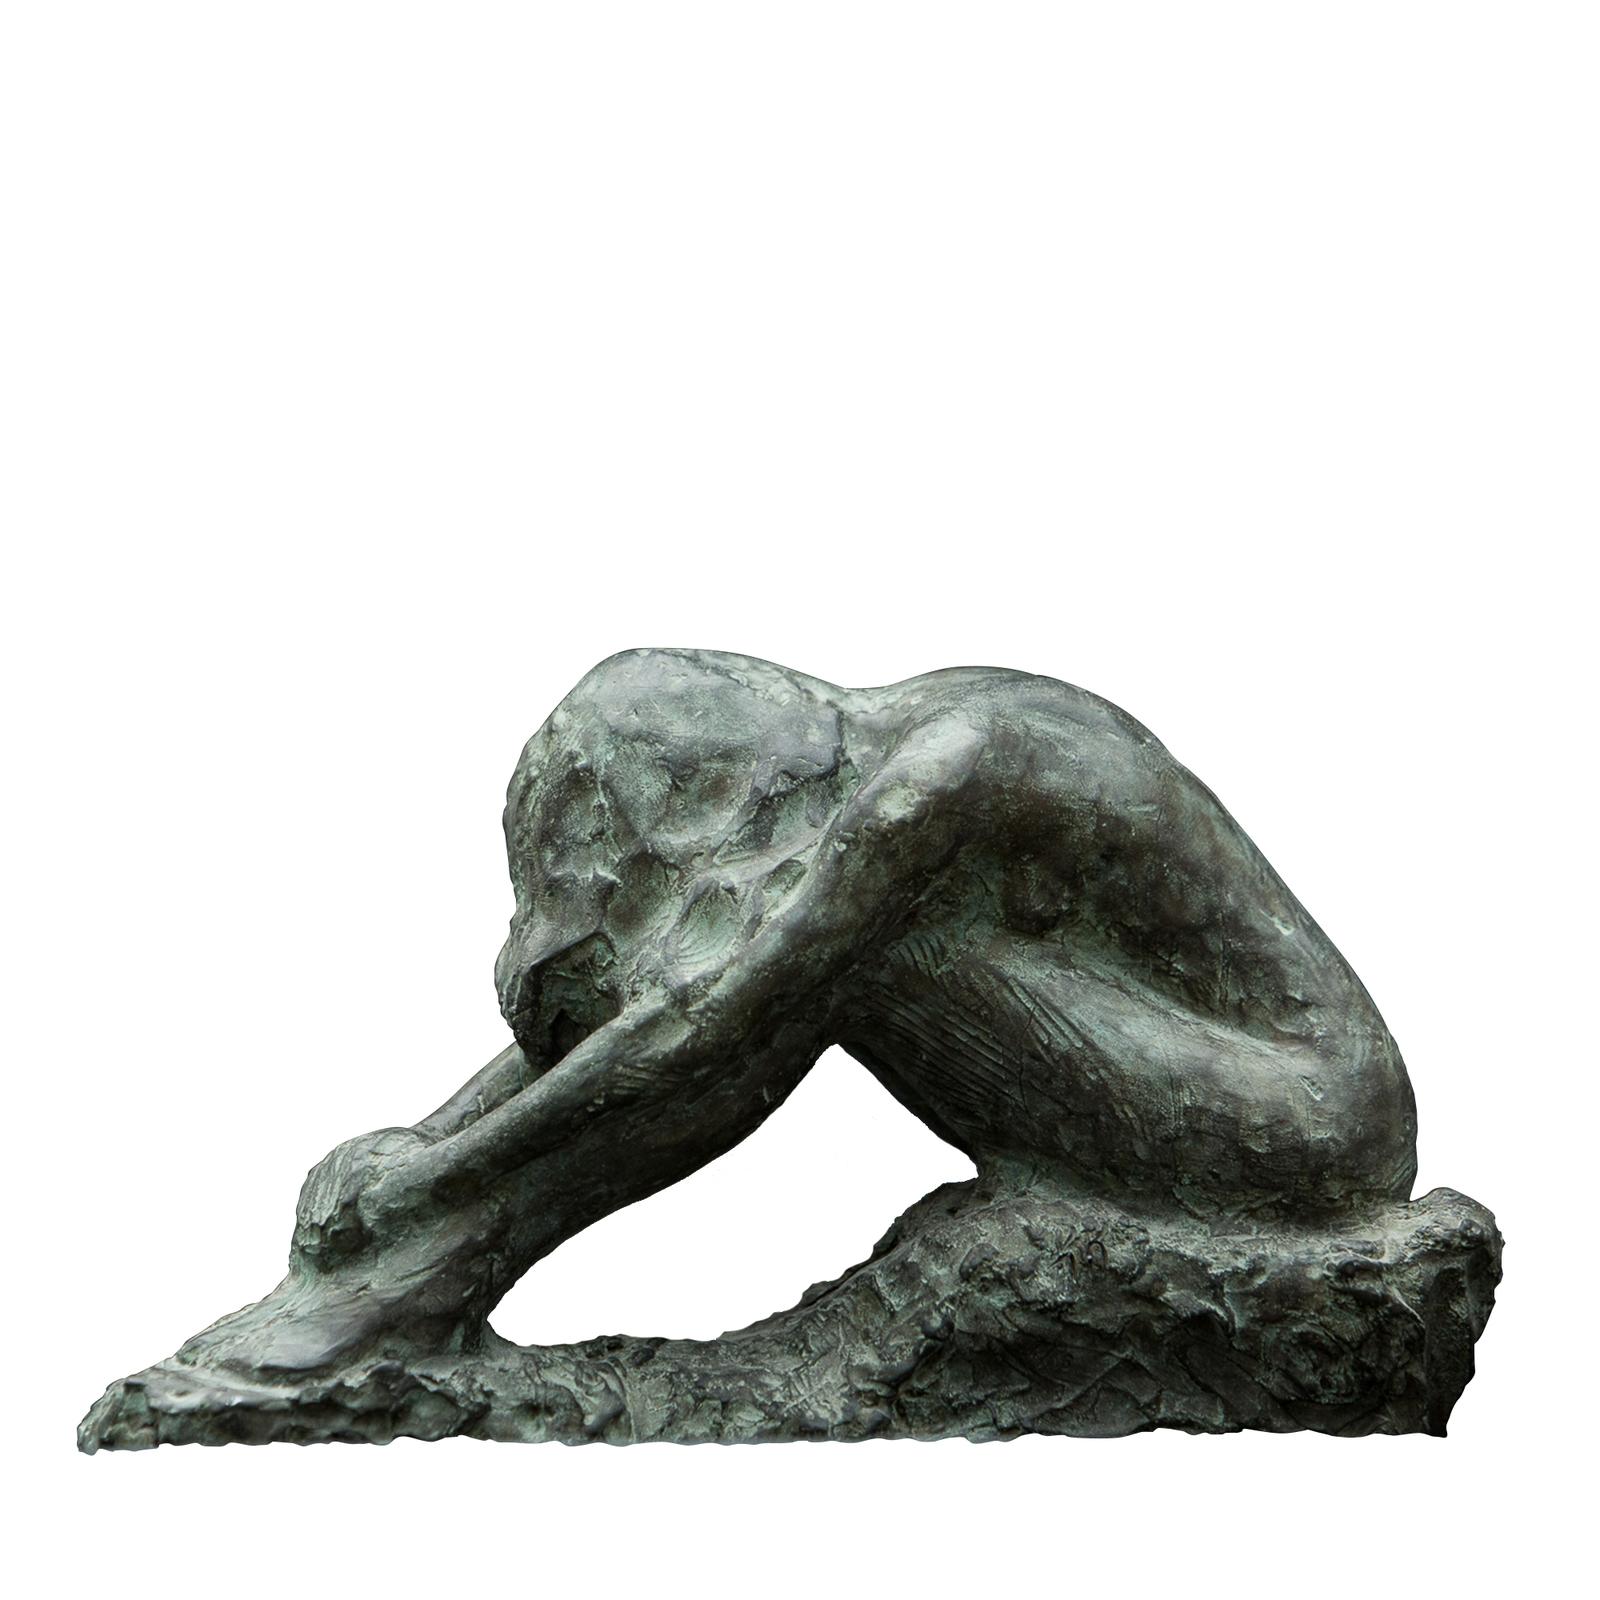 Cette sculpture en bronze est une pièce originale créée en 2004 par Raffaello Romanelli, dont l'objectif était de représenter un moment de réflexion interne grâce à la position du corps. Pour cette pièce, Raffaello Romanelli a utilisé un modèle